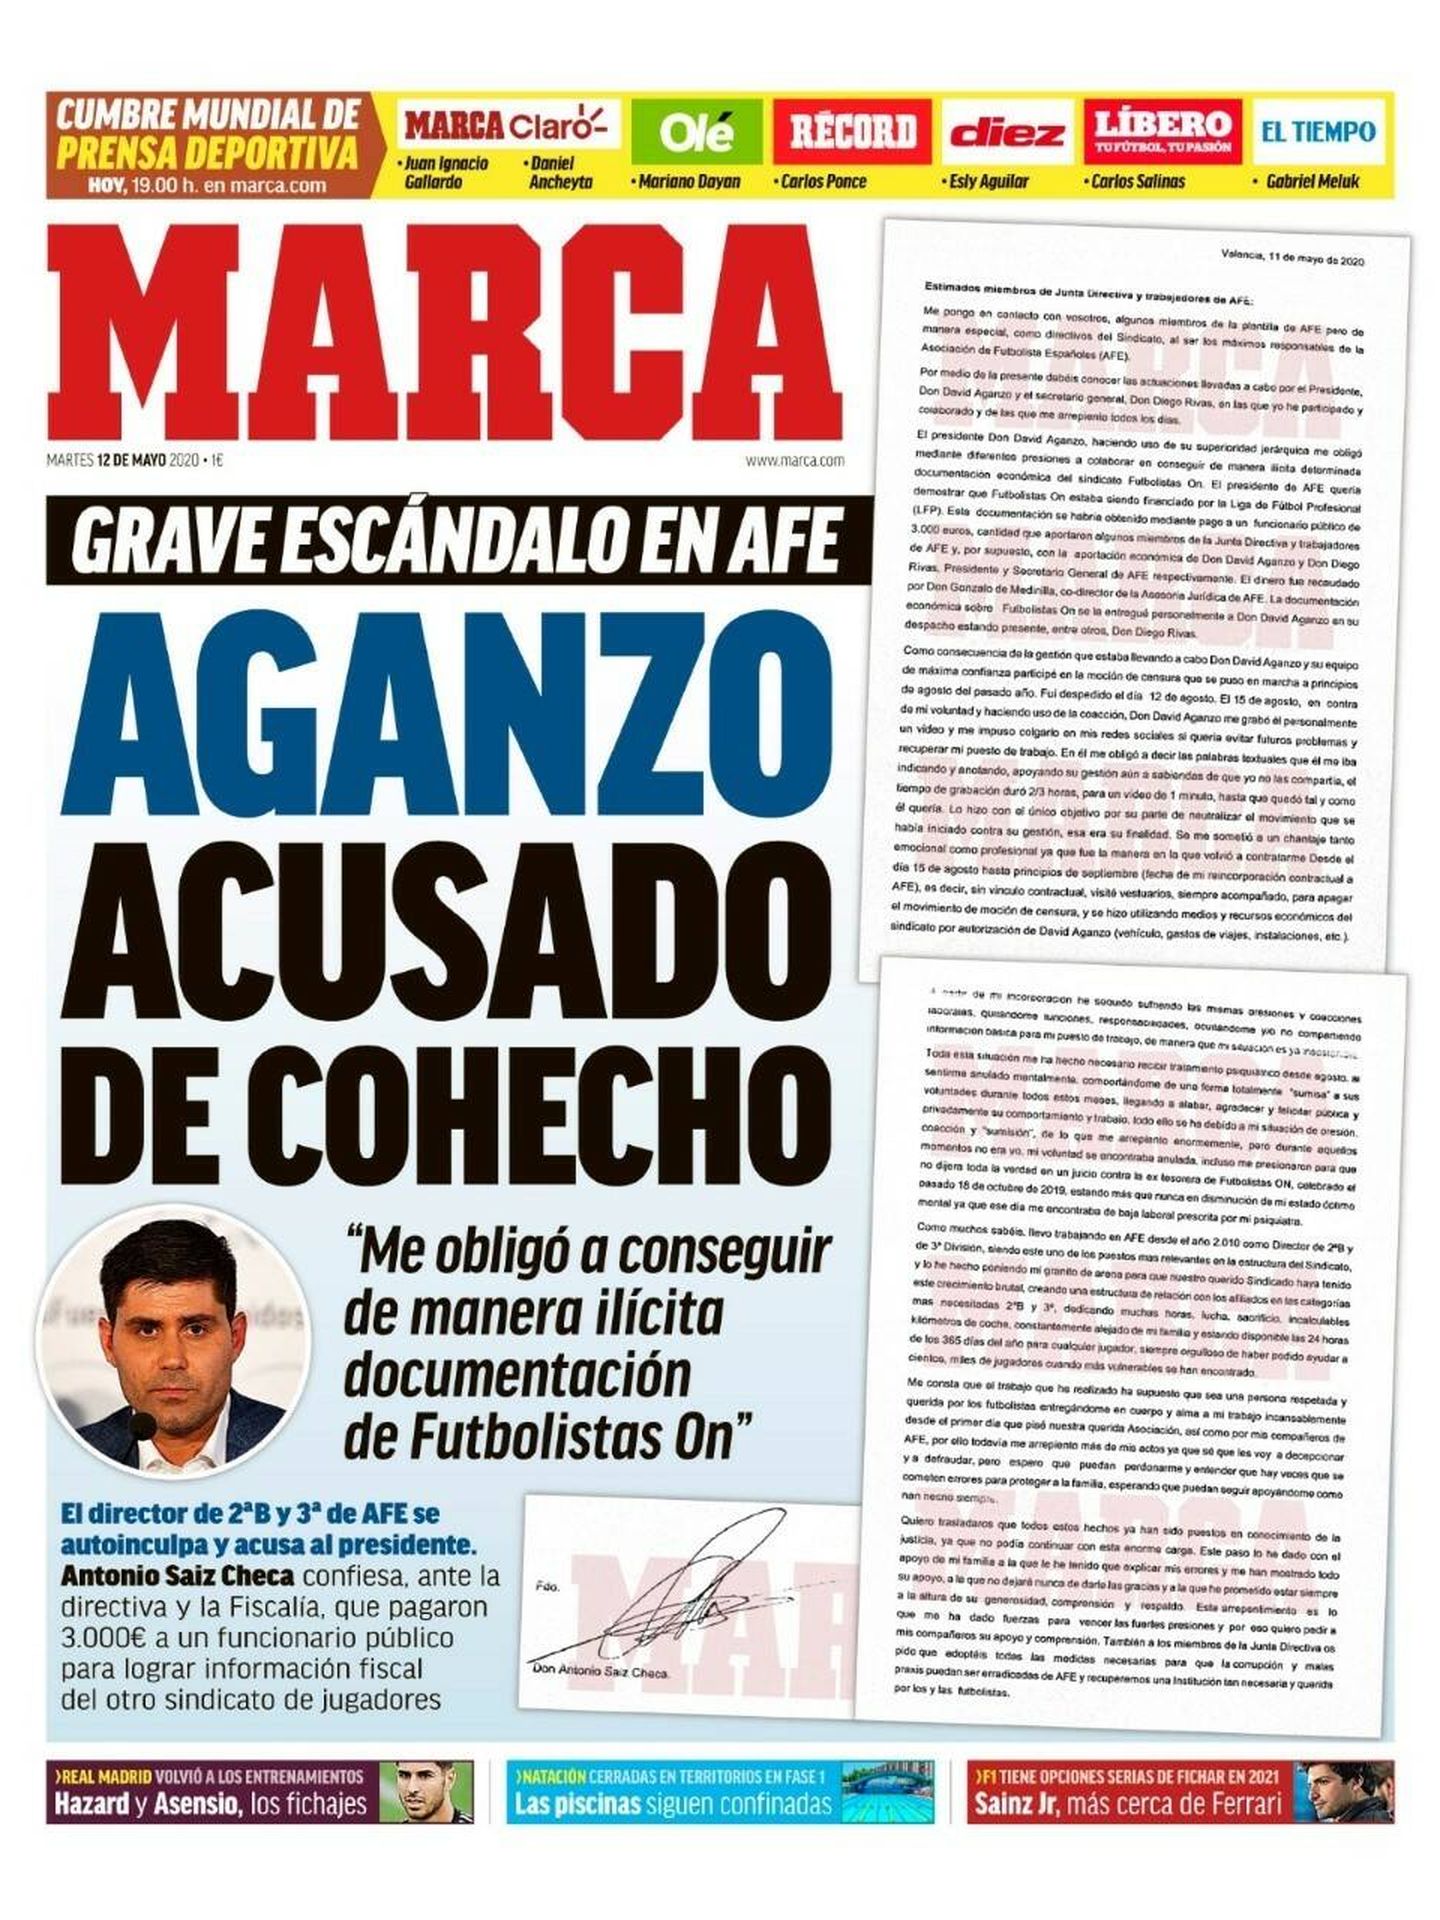 Portada del diario 'Marca' con la información sobre Aganzo.